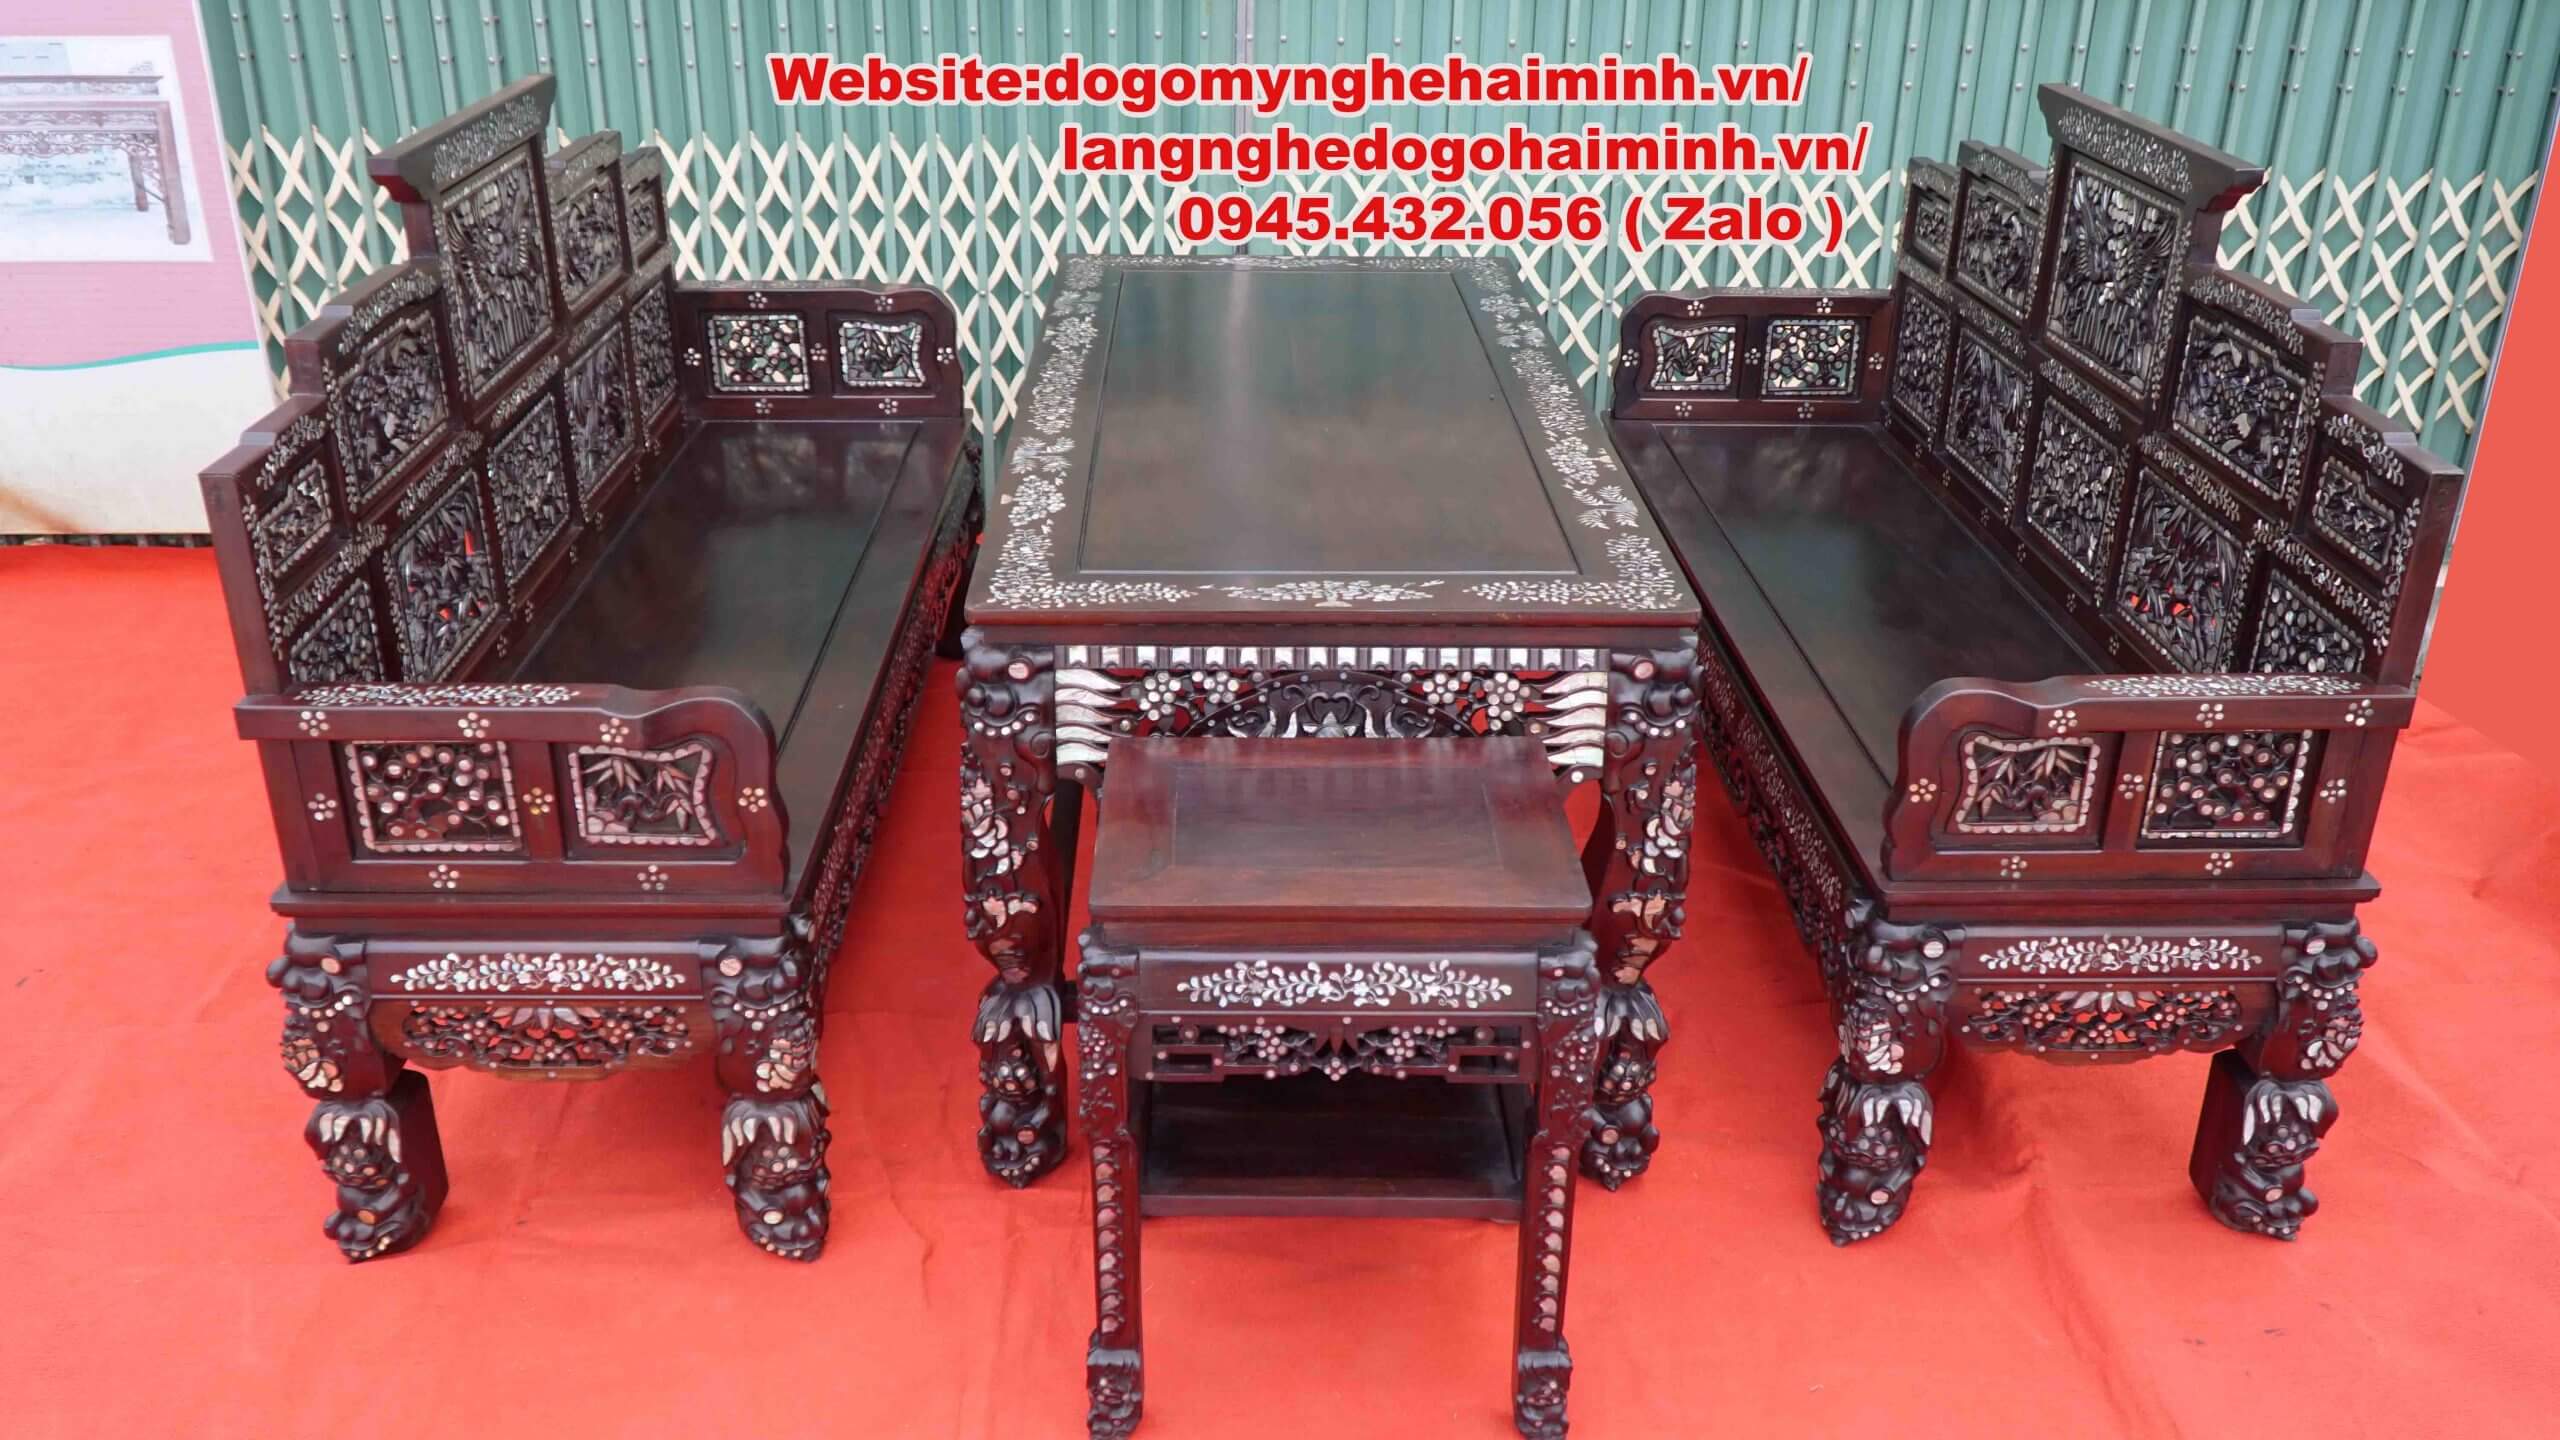 Nơi bán bàn ghế trường kỷ đẹp Hải Minh Nam Định